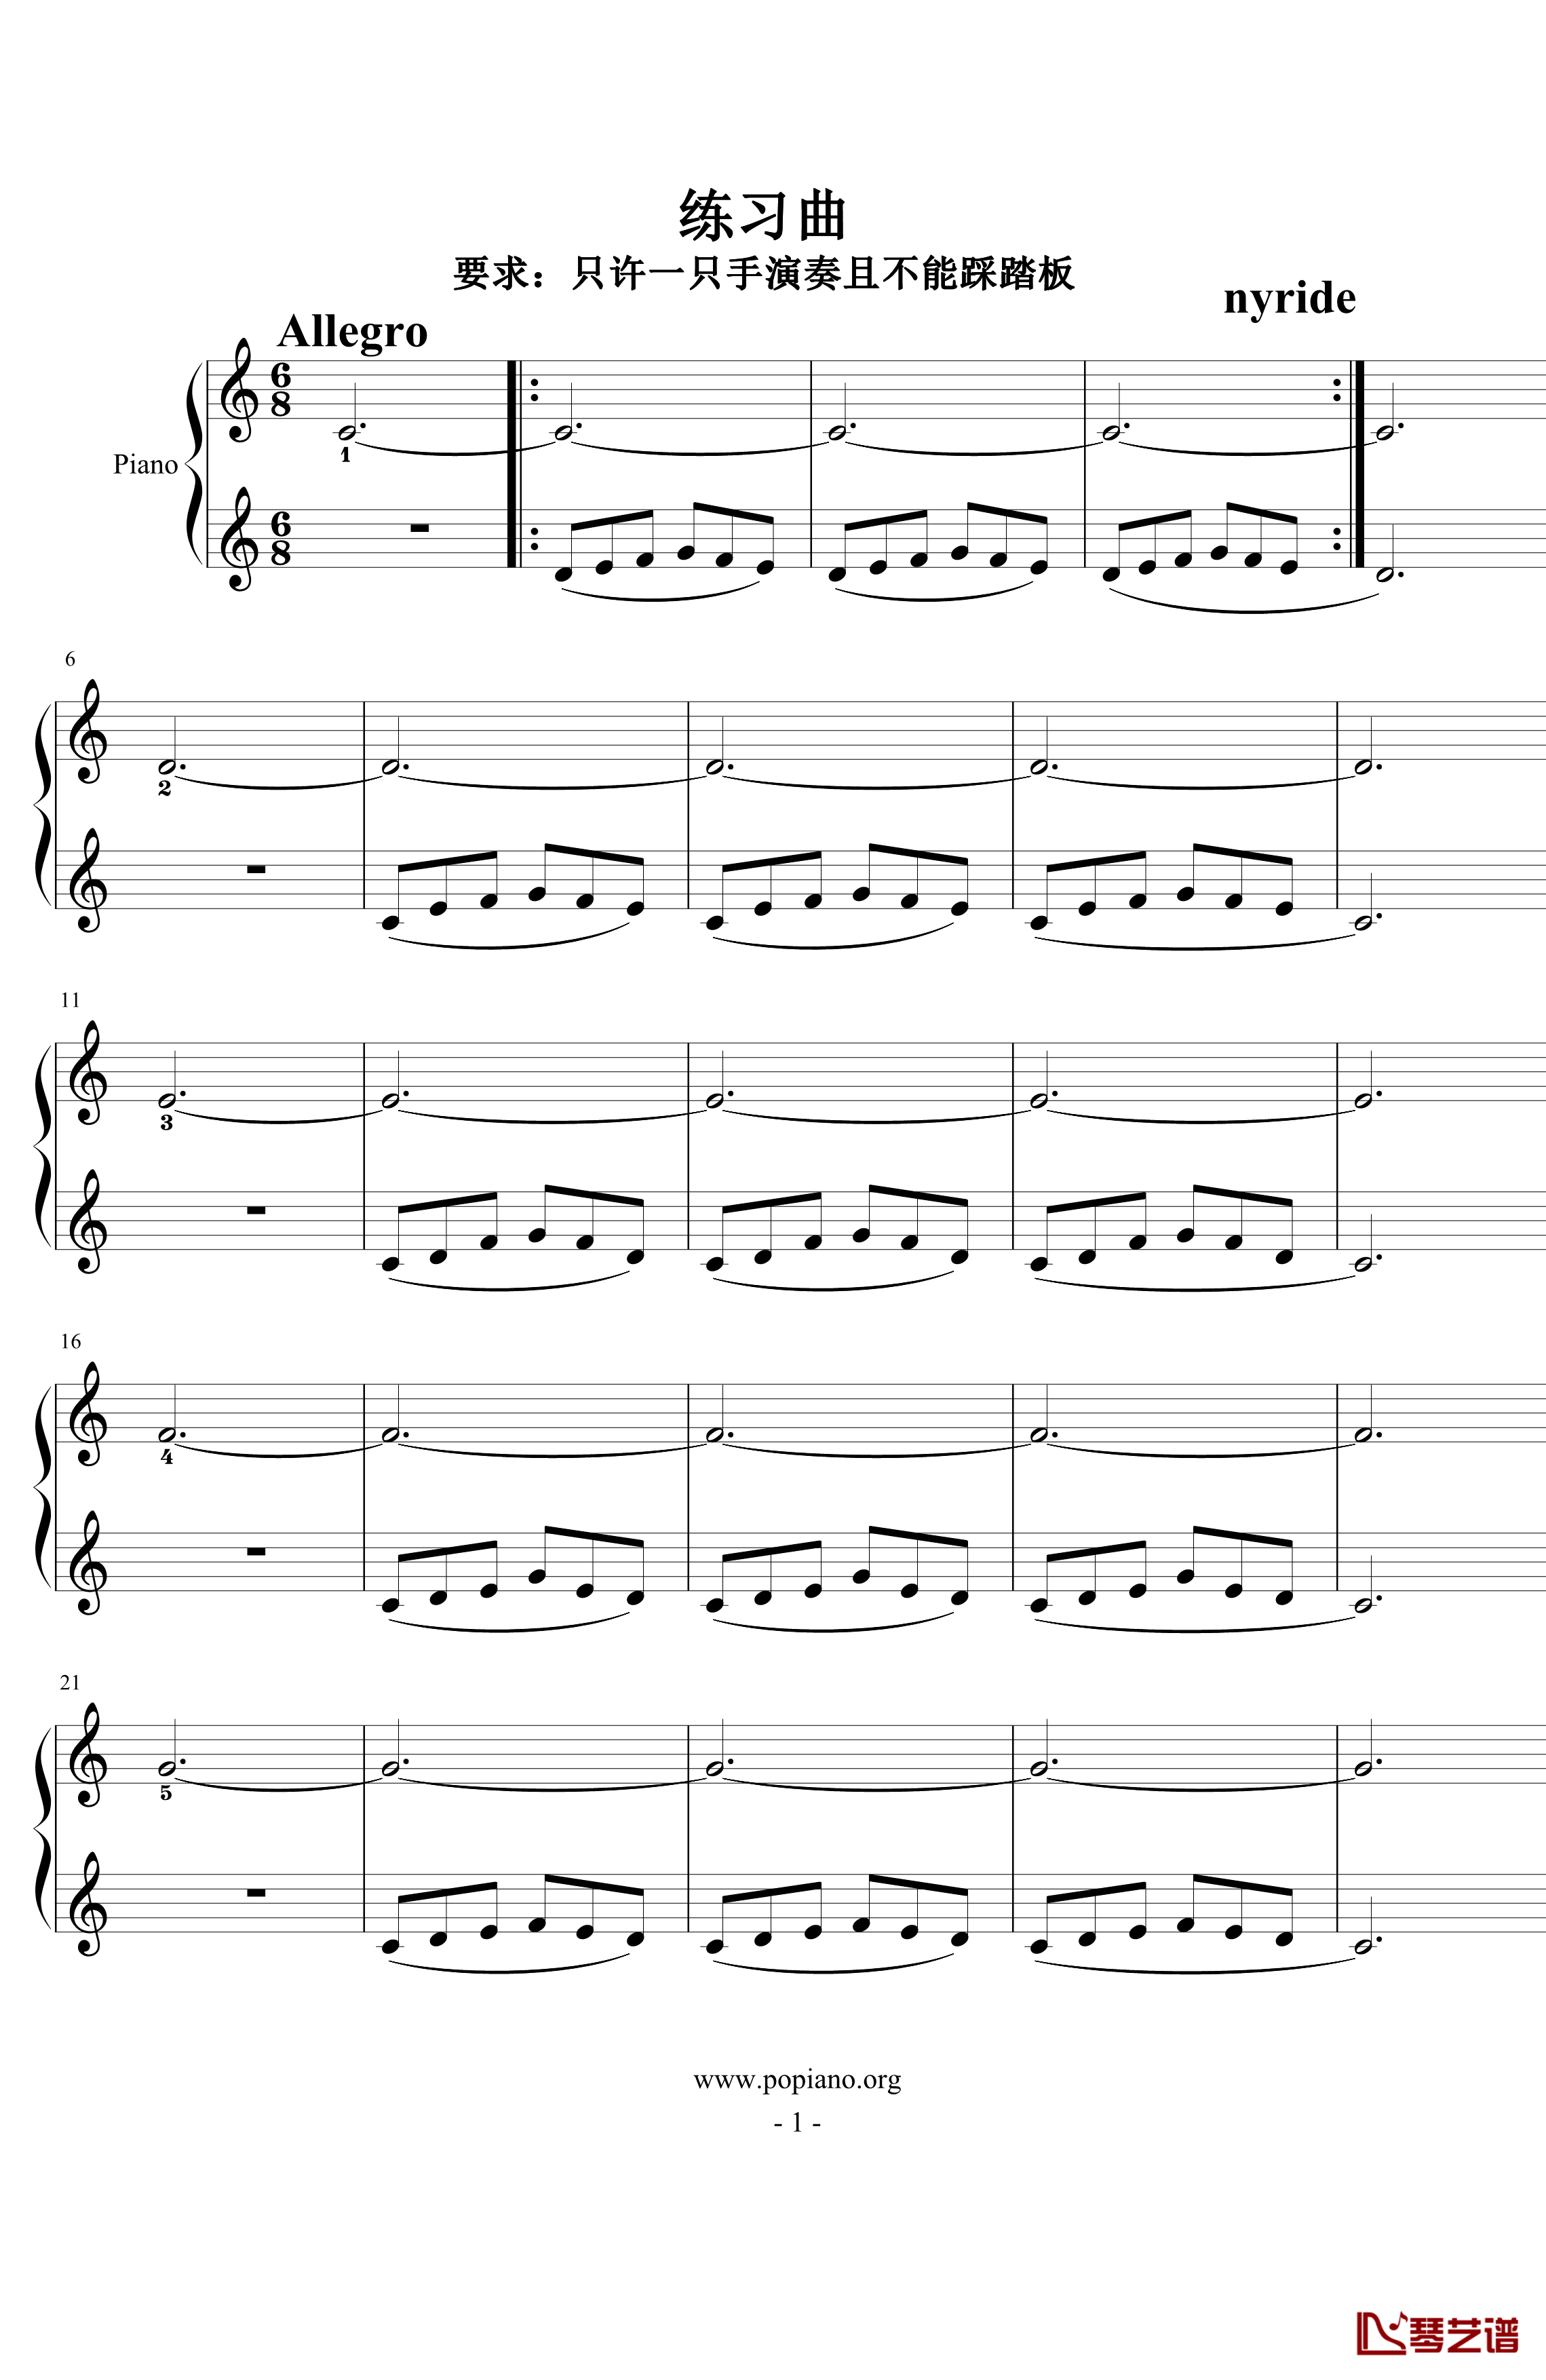 练习曲钢琴谱-nyride1